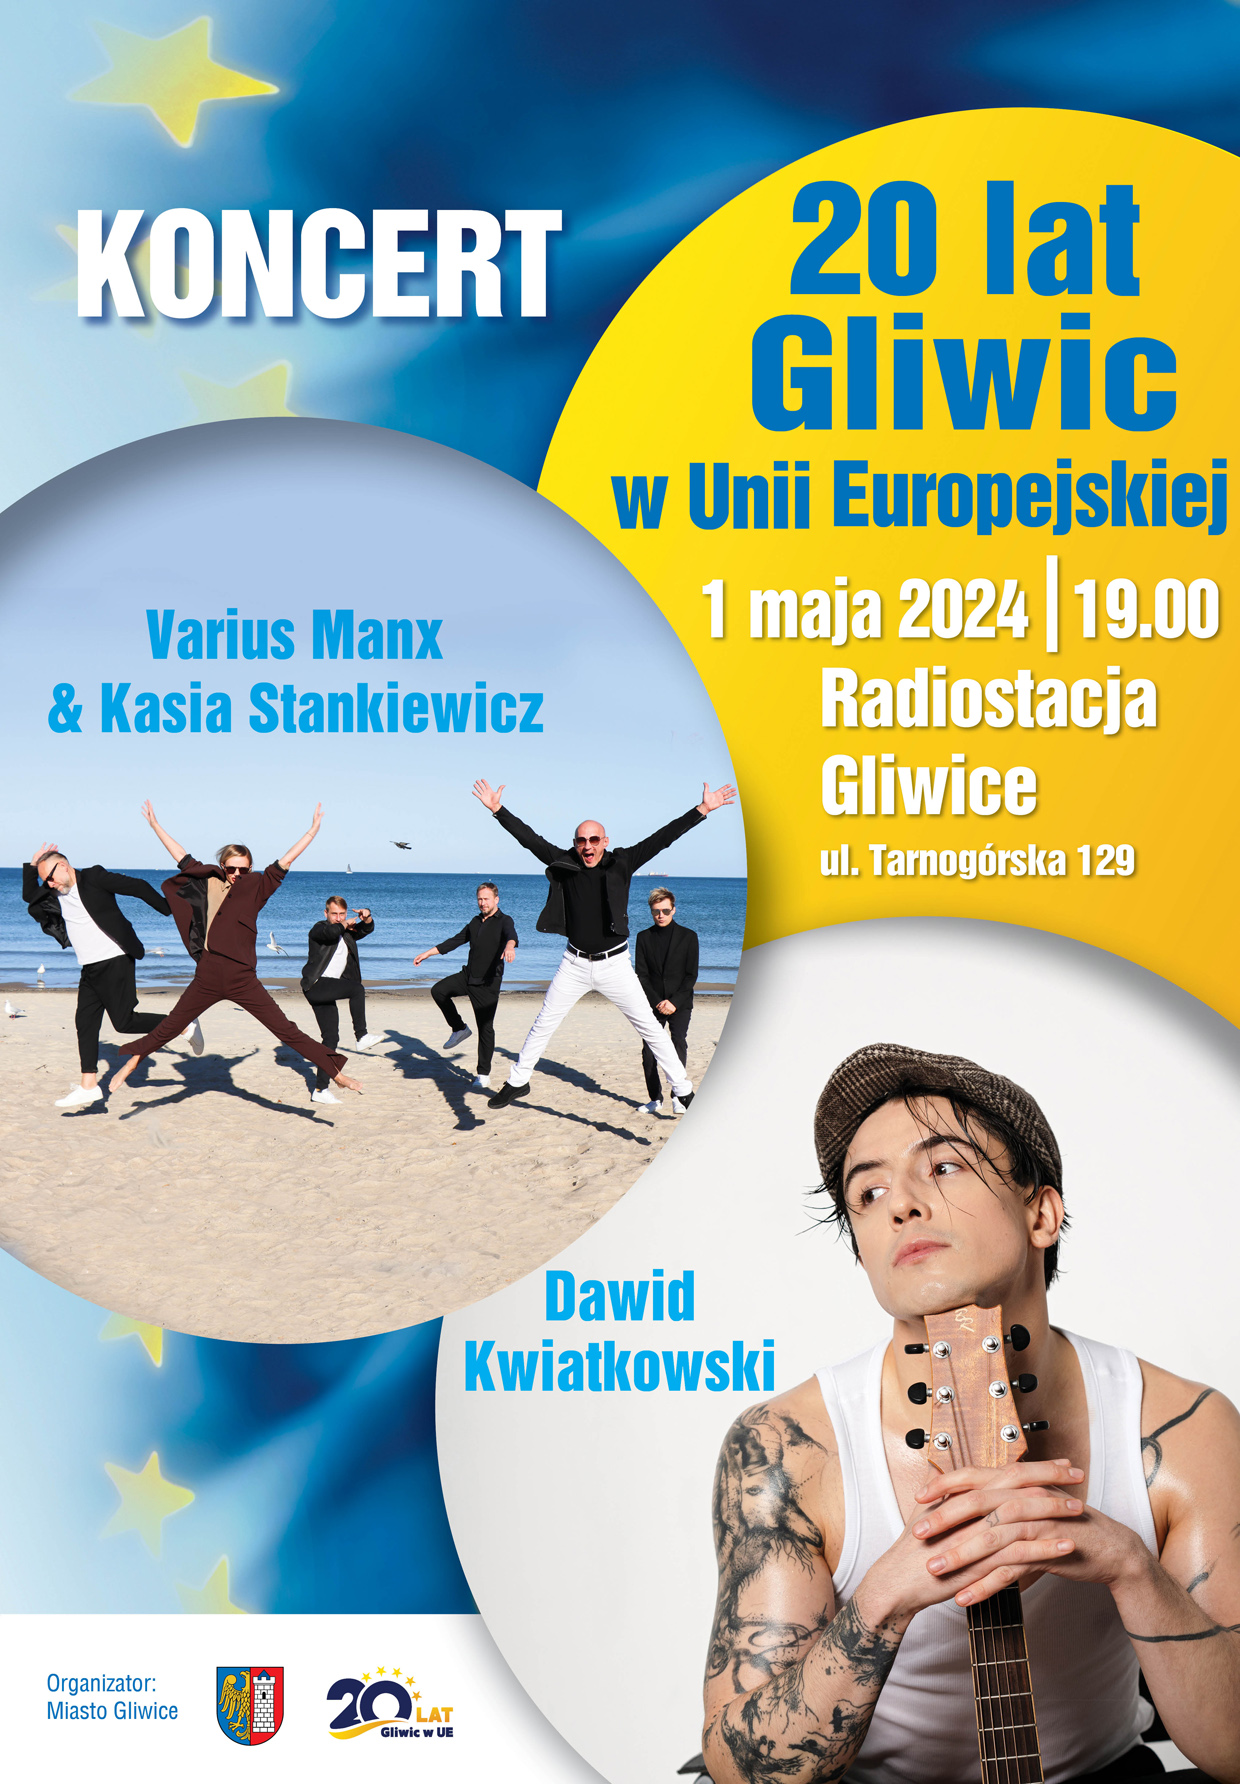 KoncertUEmy pod Radiostacją - 20 lat Gliwic w UE